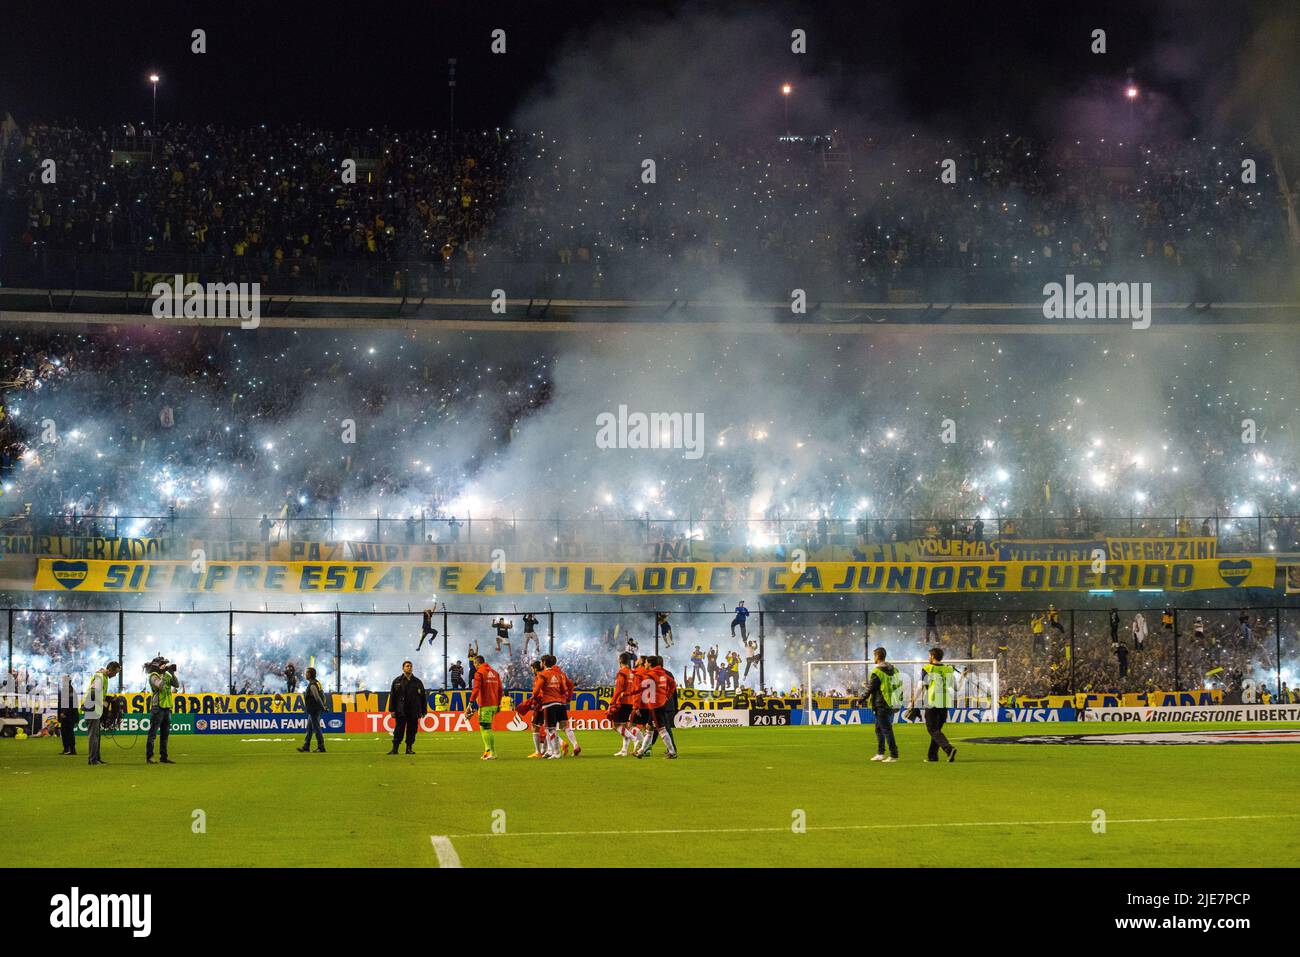 Por fogos de artifício contra o Boca Juniors, River Plate é punido